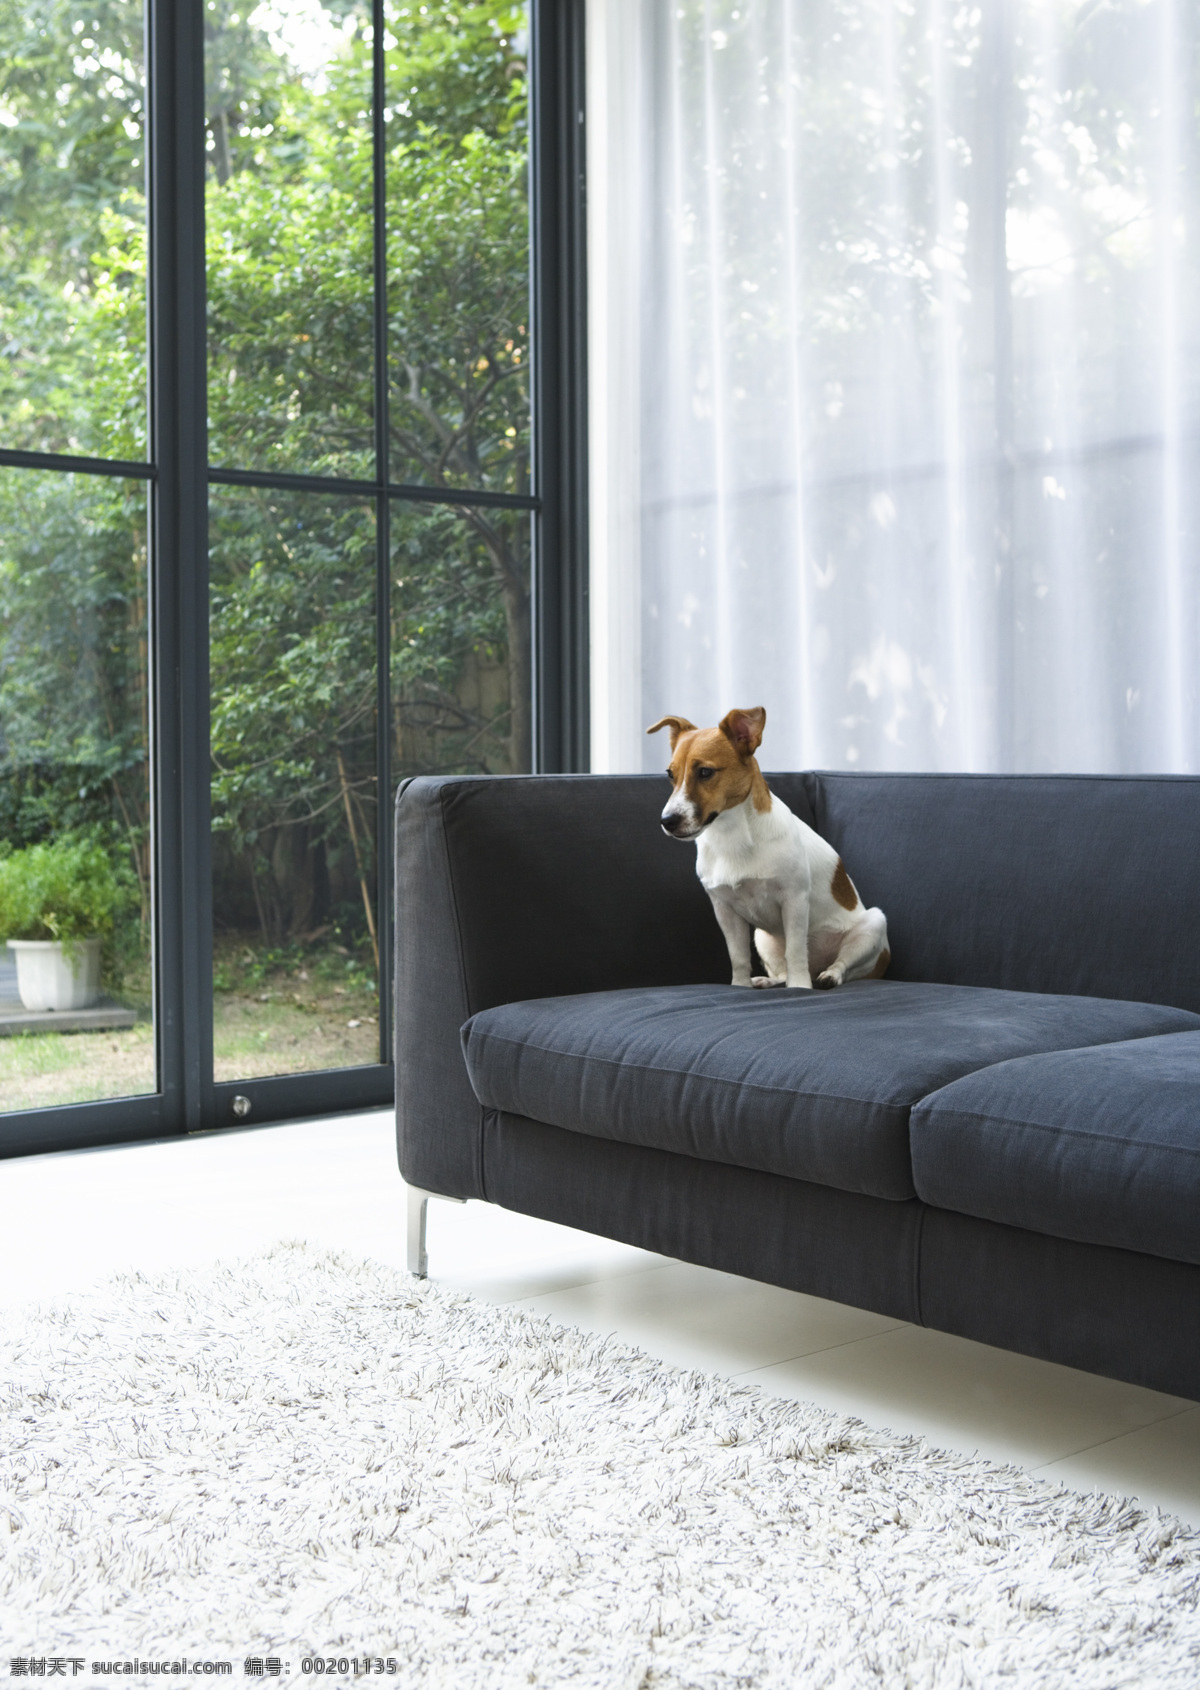 生活空间 宠物 沙发 室内素材 植物 家居装饰素材 室内设计